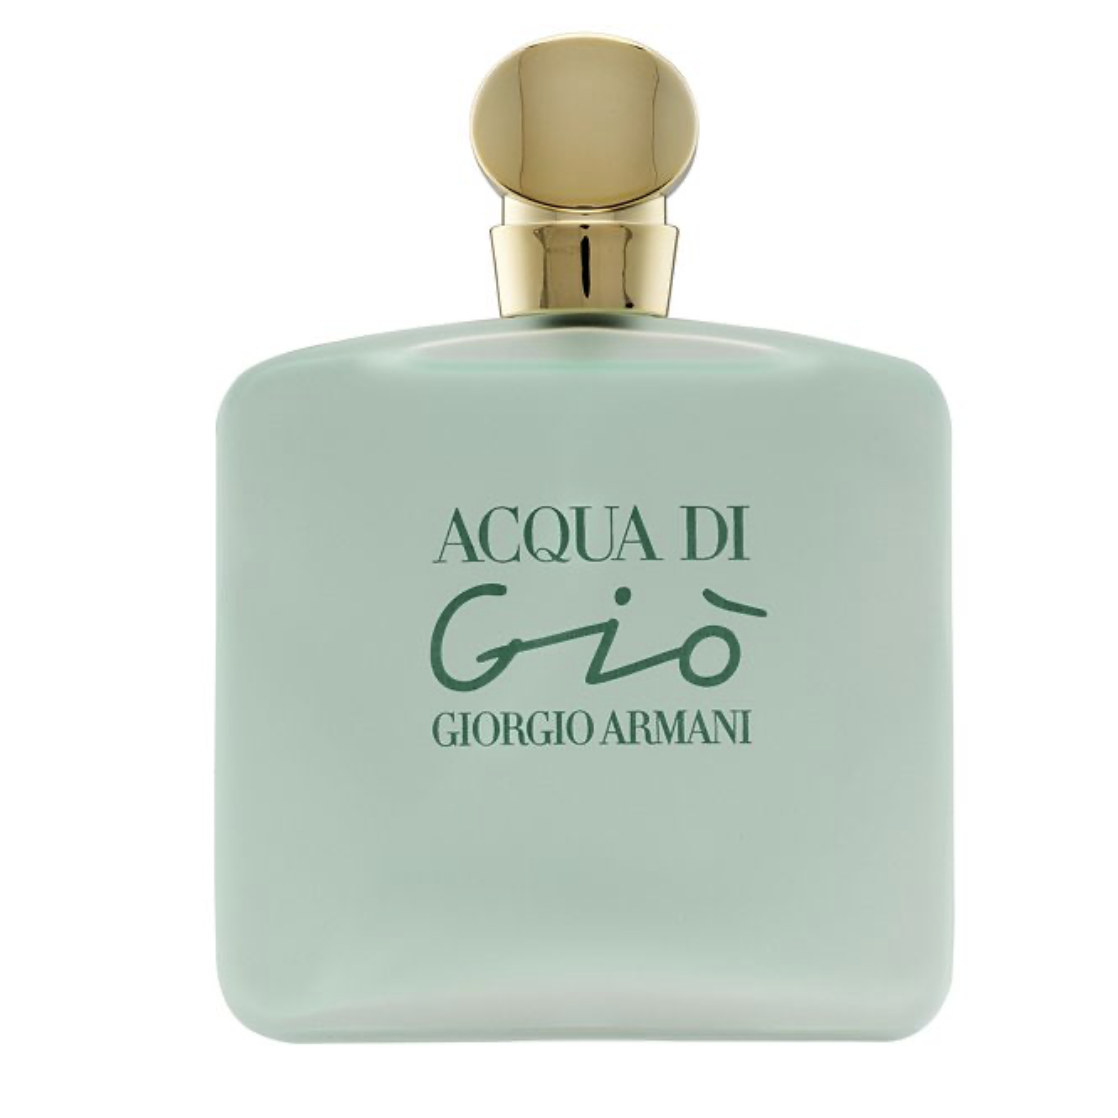 GEORGIO ARMANI - Acqua Di Gio for Her Eau de Toilette, 3.4 oz